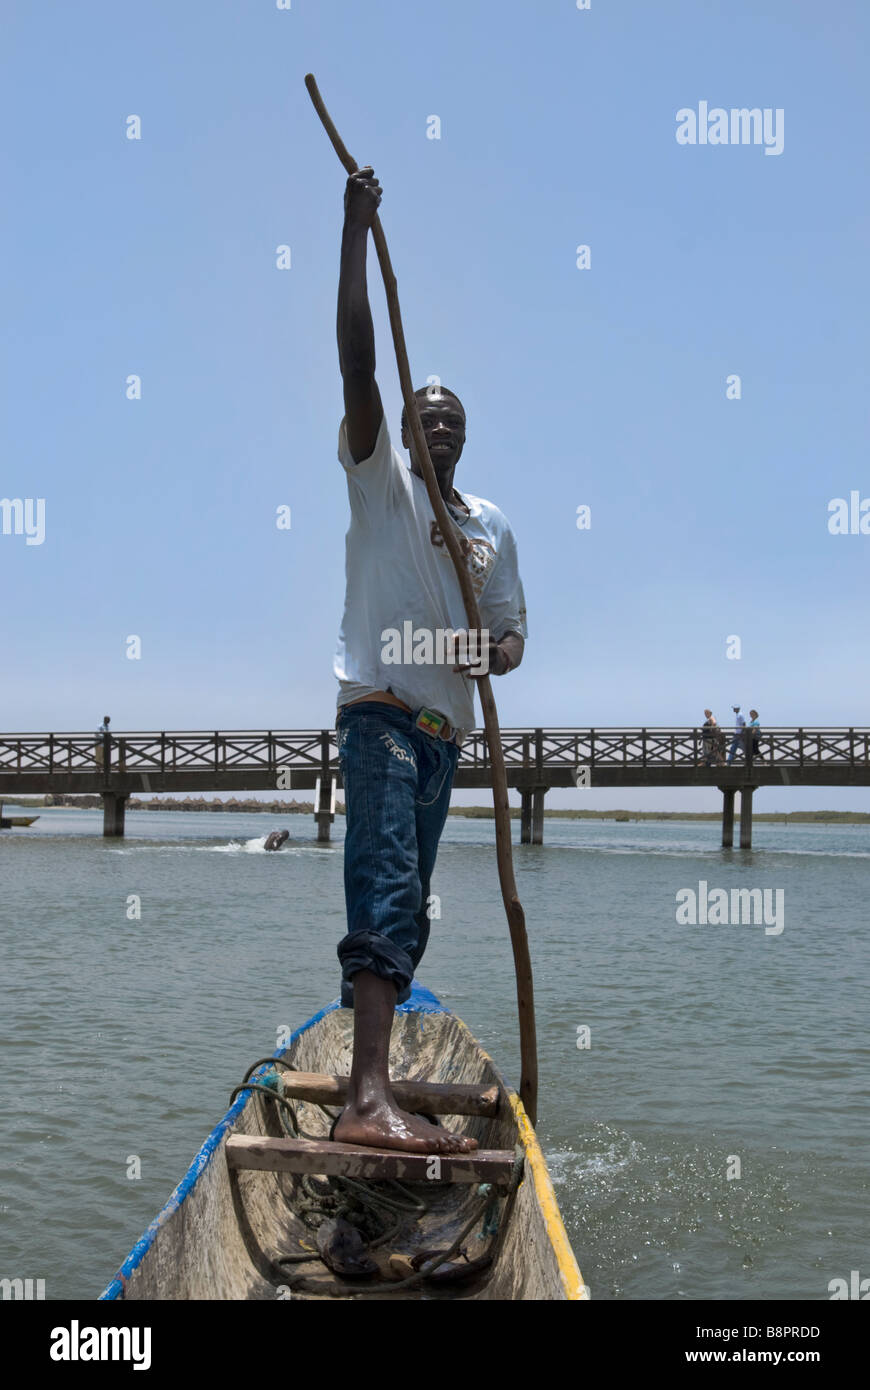 L'homme de l'Afrique de l'aviron dans une forme de banane bateau sculpté à la main à Joal fadiouth Sénégal Afrique de l'Ouest Banque D'Images